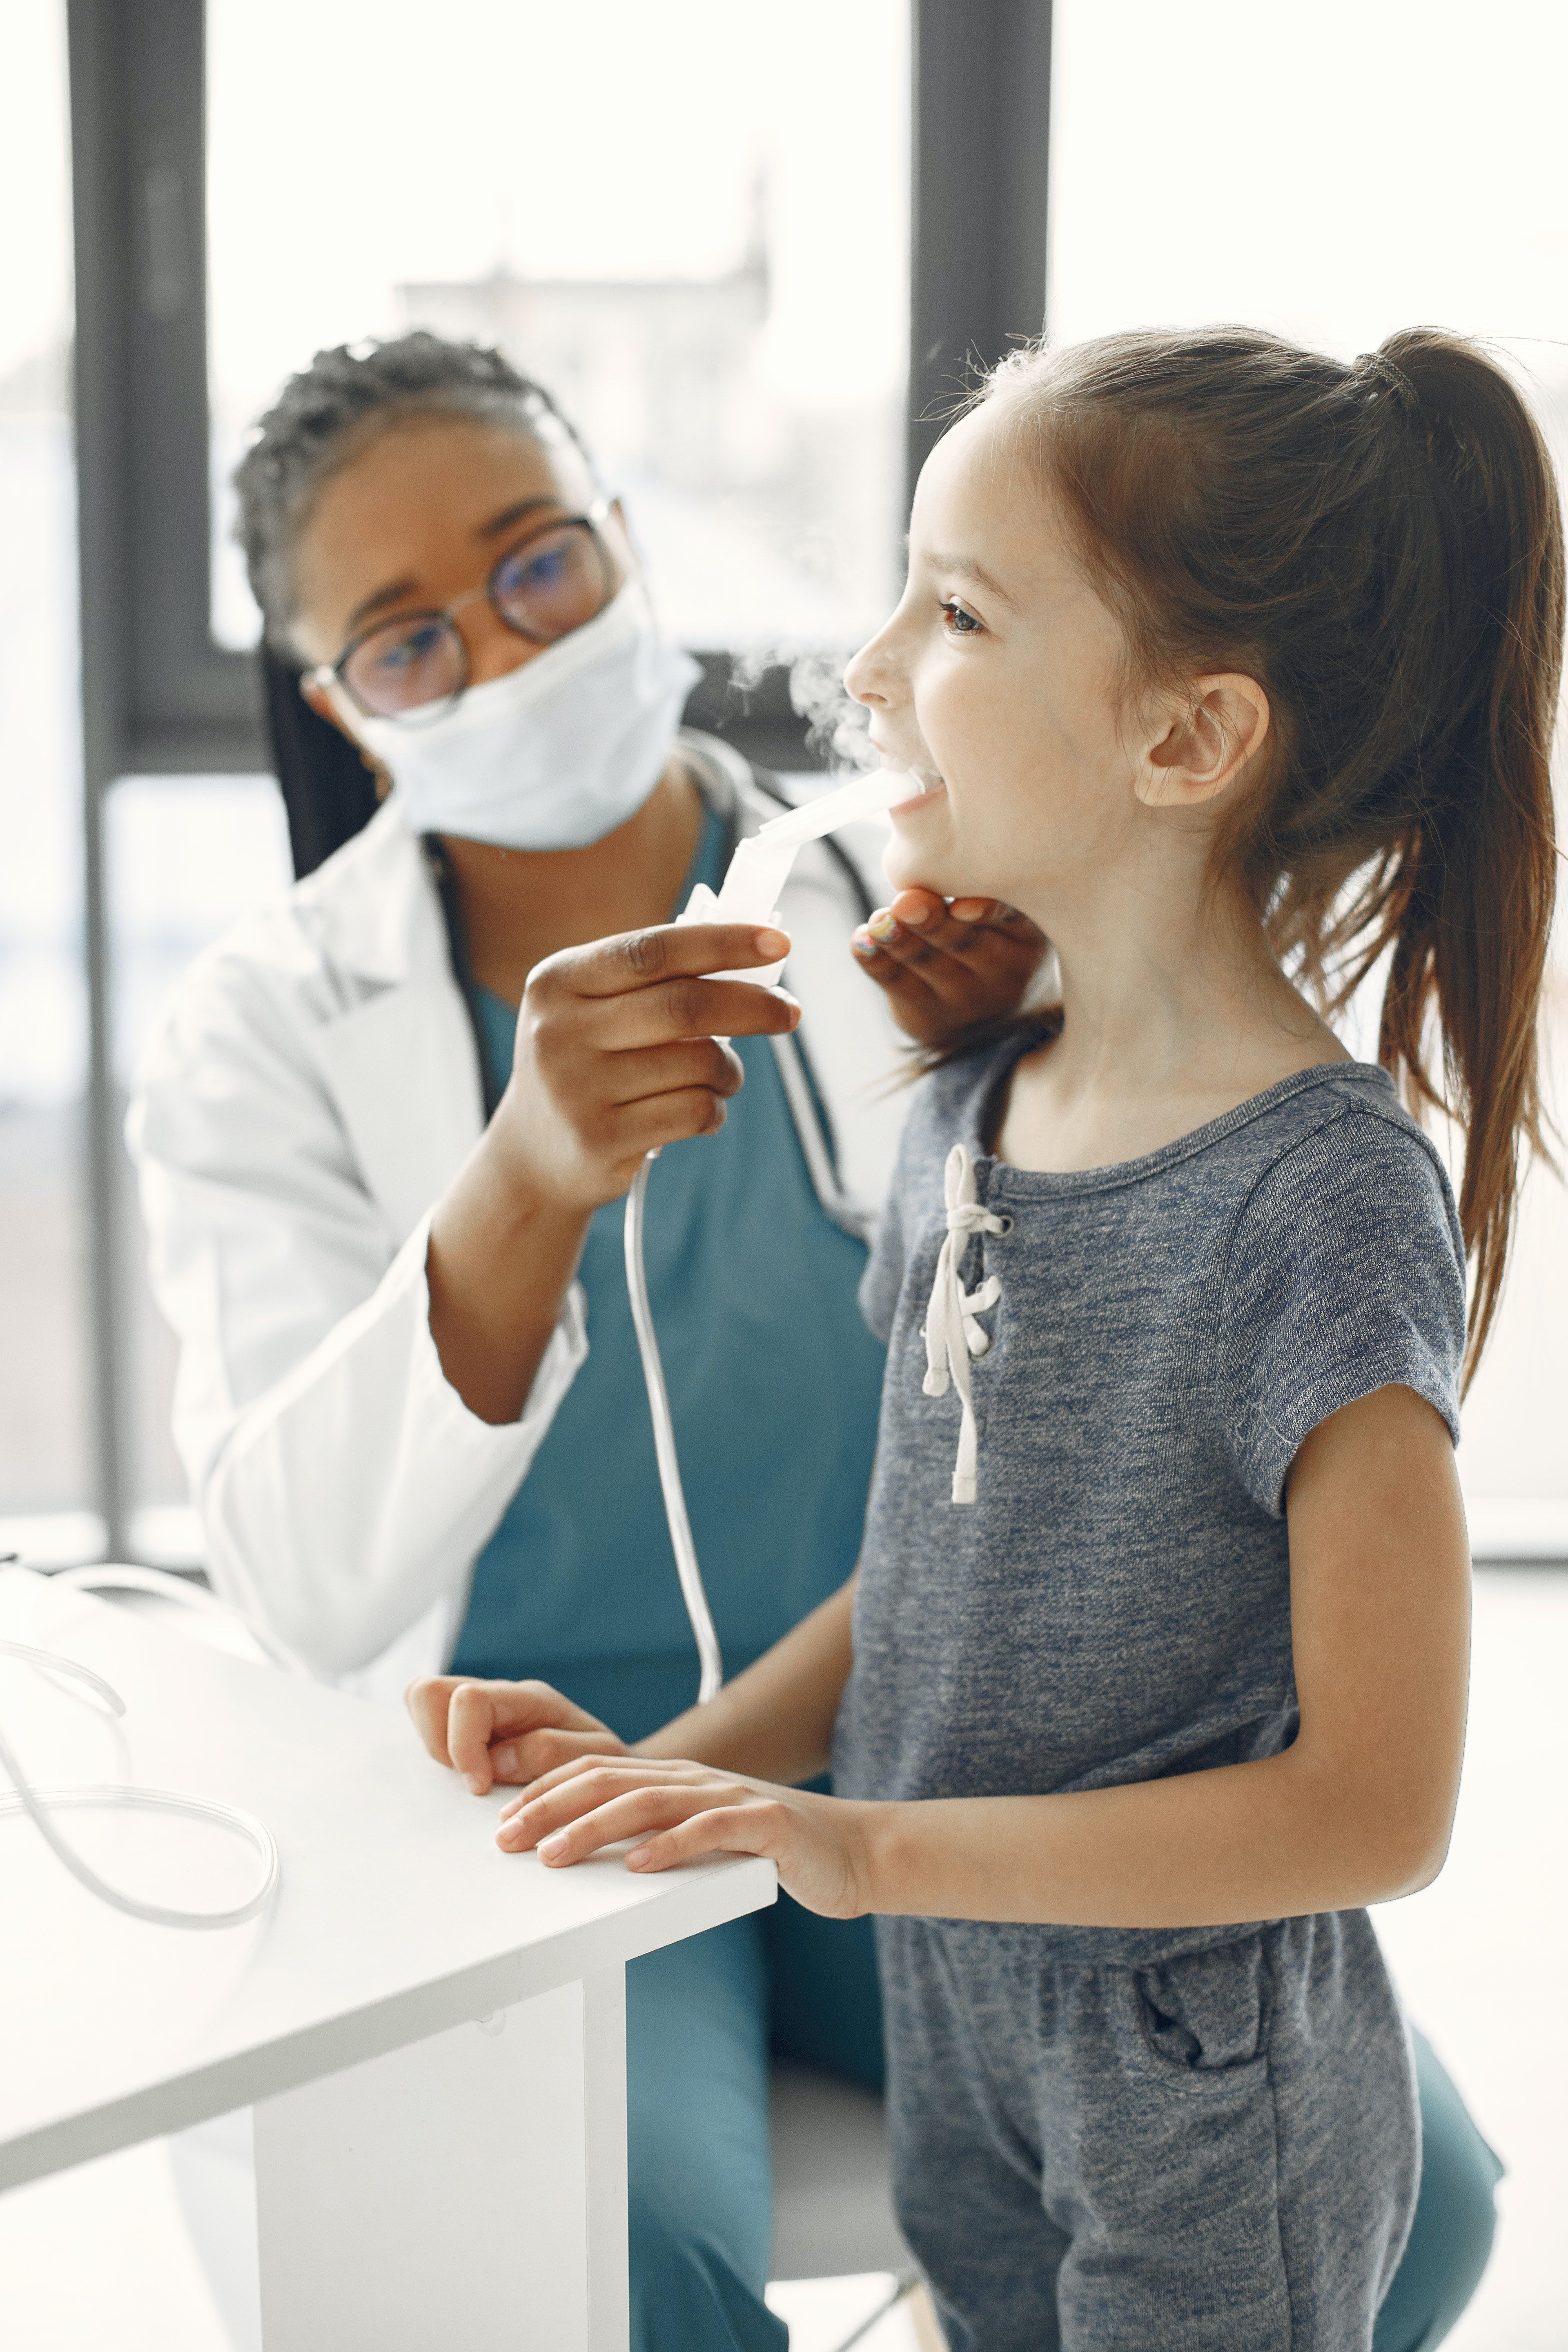 atemtrainer helfen, Asthma zu lindern.